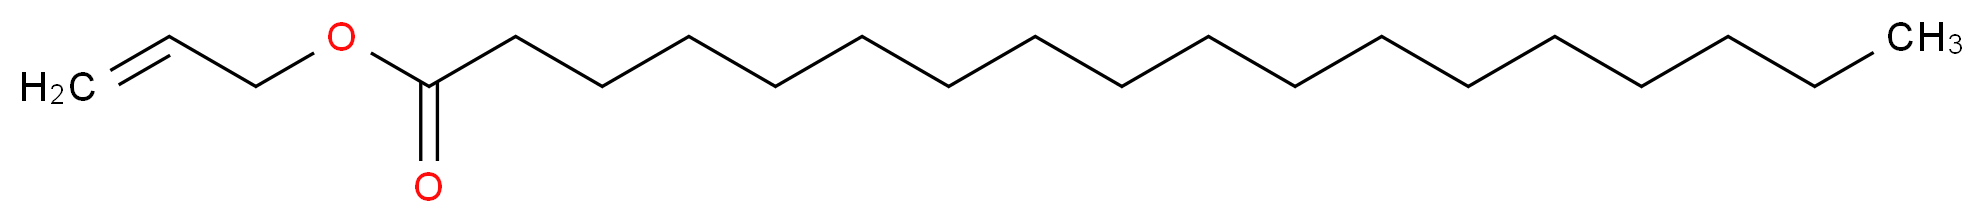 prop-2-en-1-yl octadecanoate_分子结构_CAS_6289-31-2